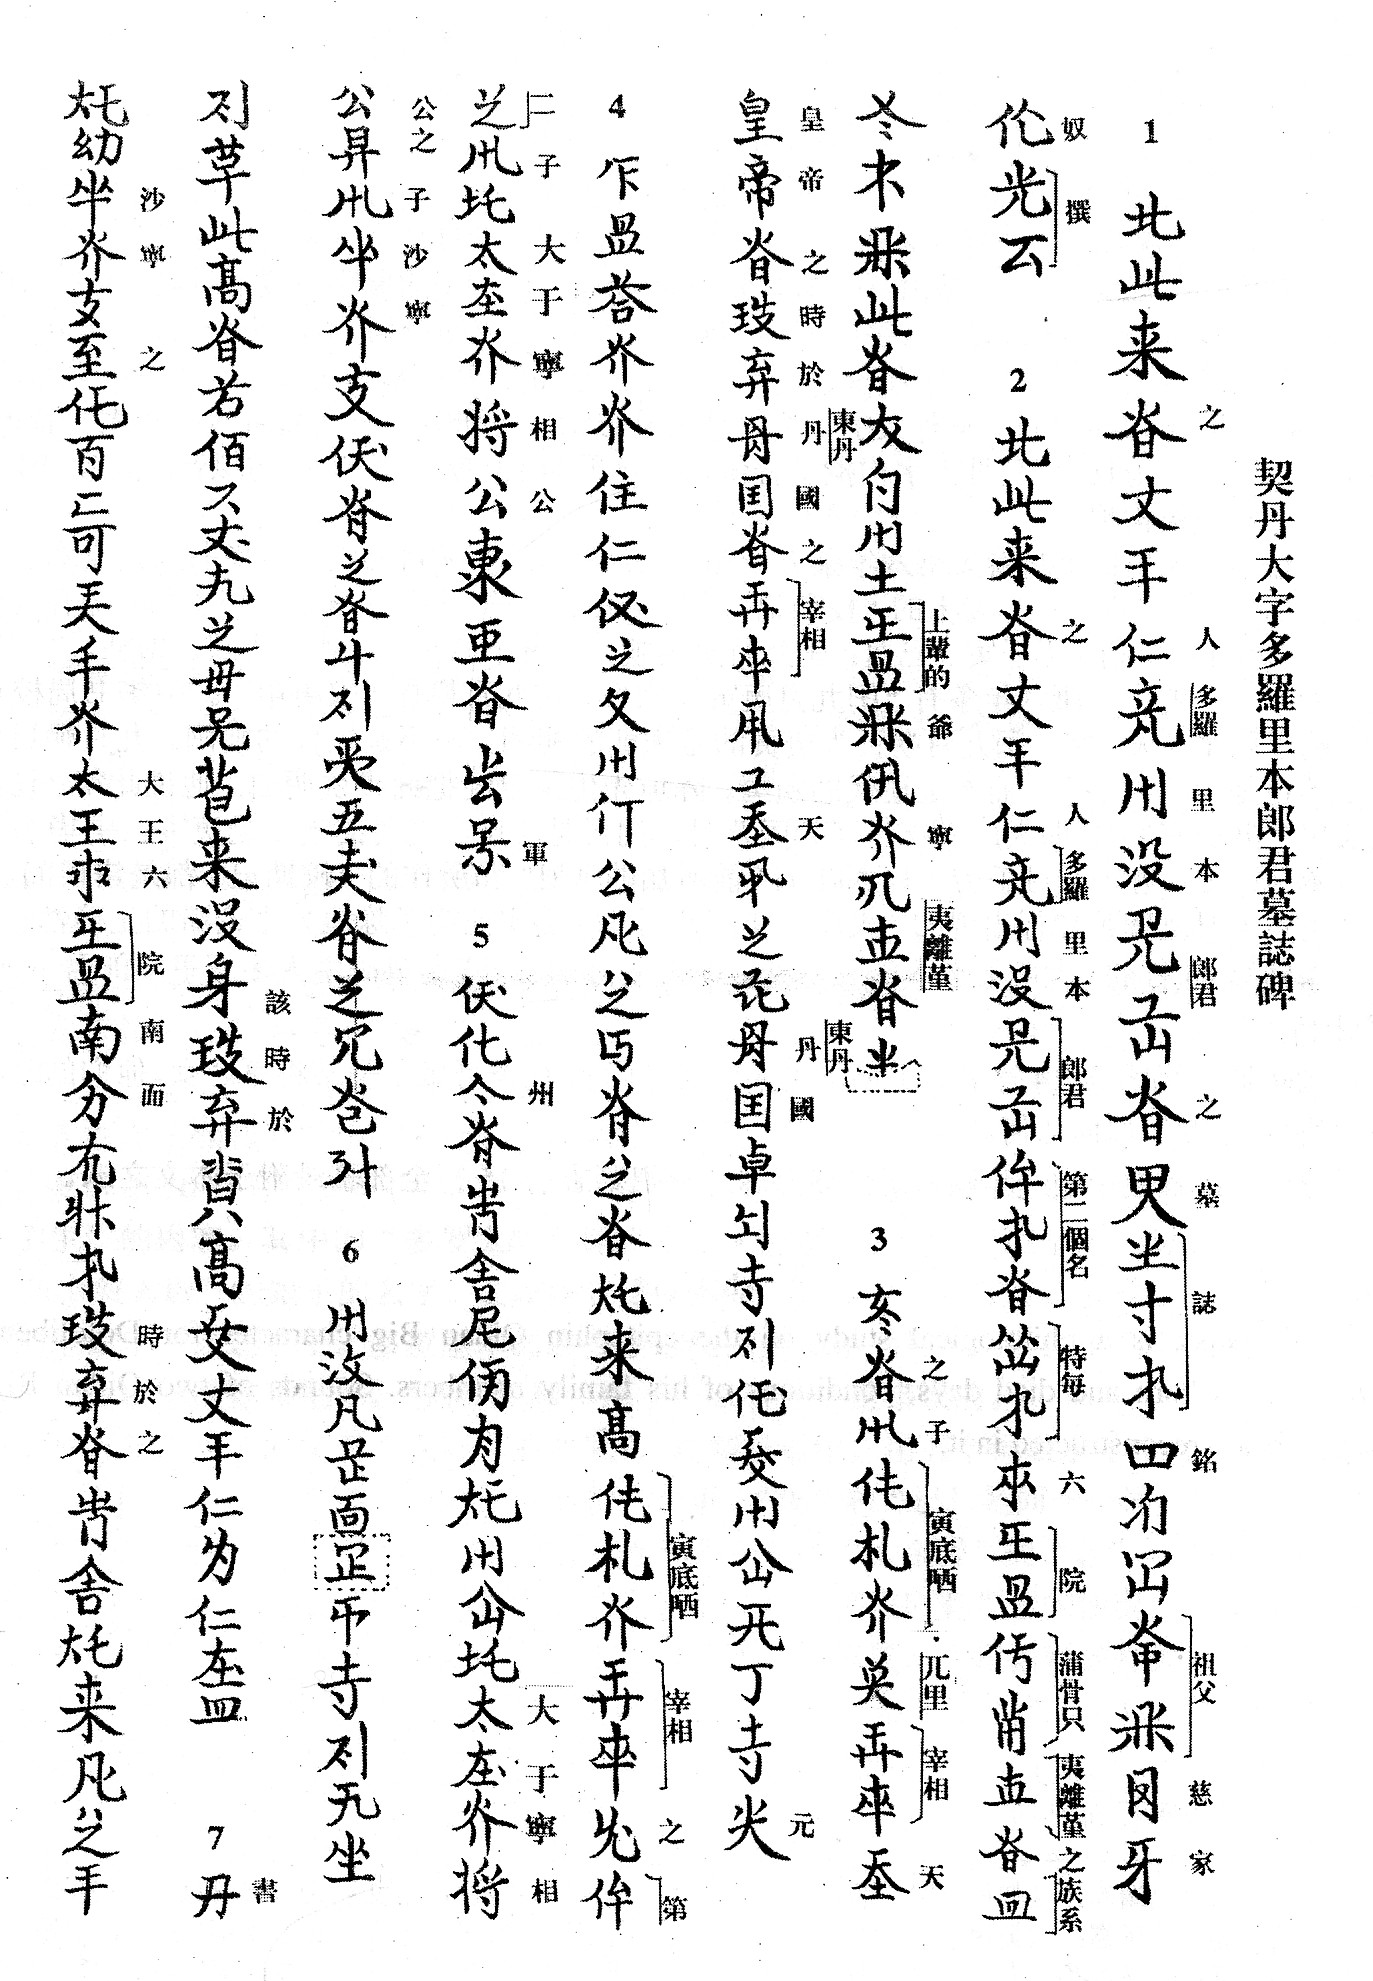 Китайский алфавит иероглифы с переводом на русский